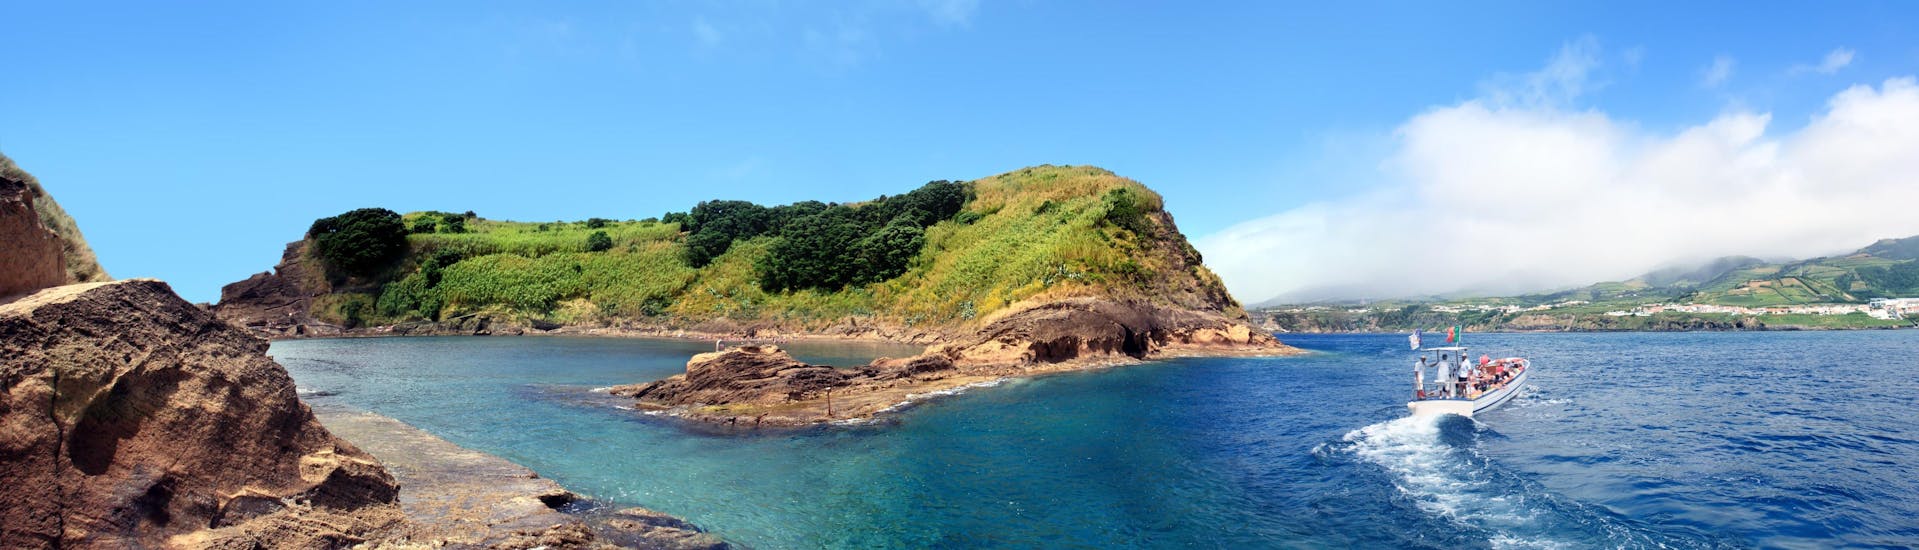 Vista de la isla de Vila Franca do Campo, un destino popular para los paseos en barco en las Azores.